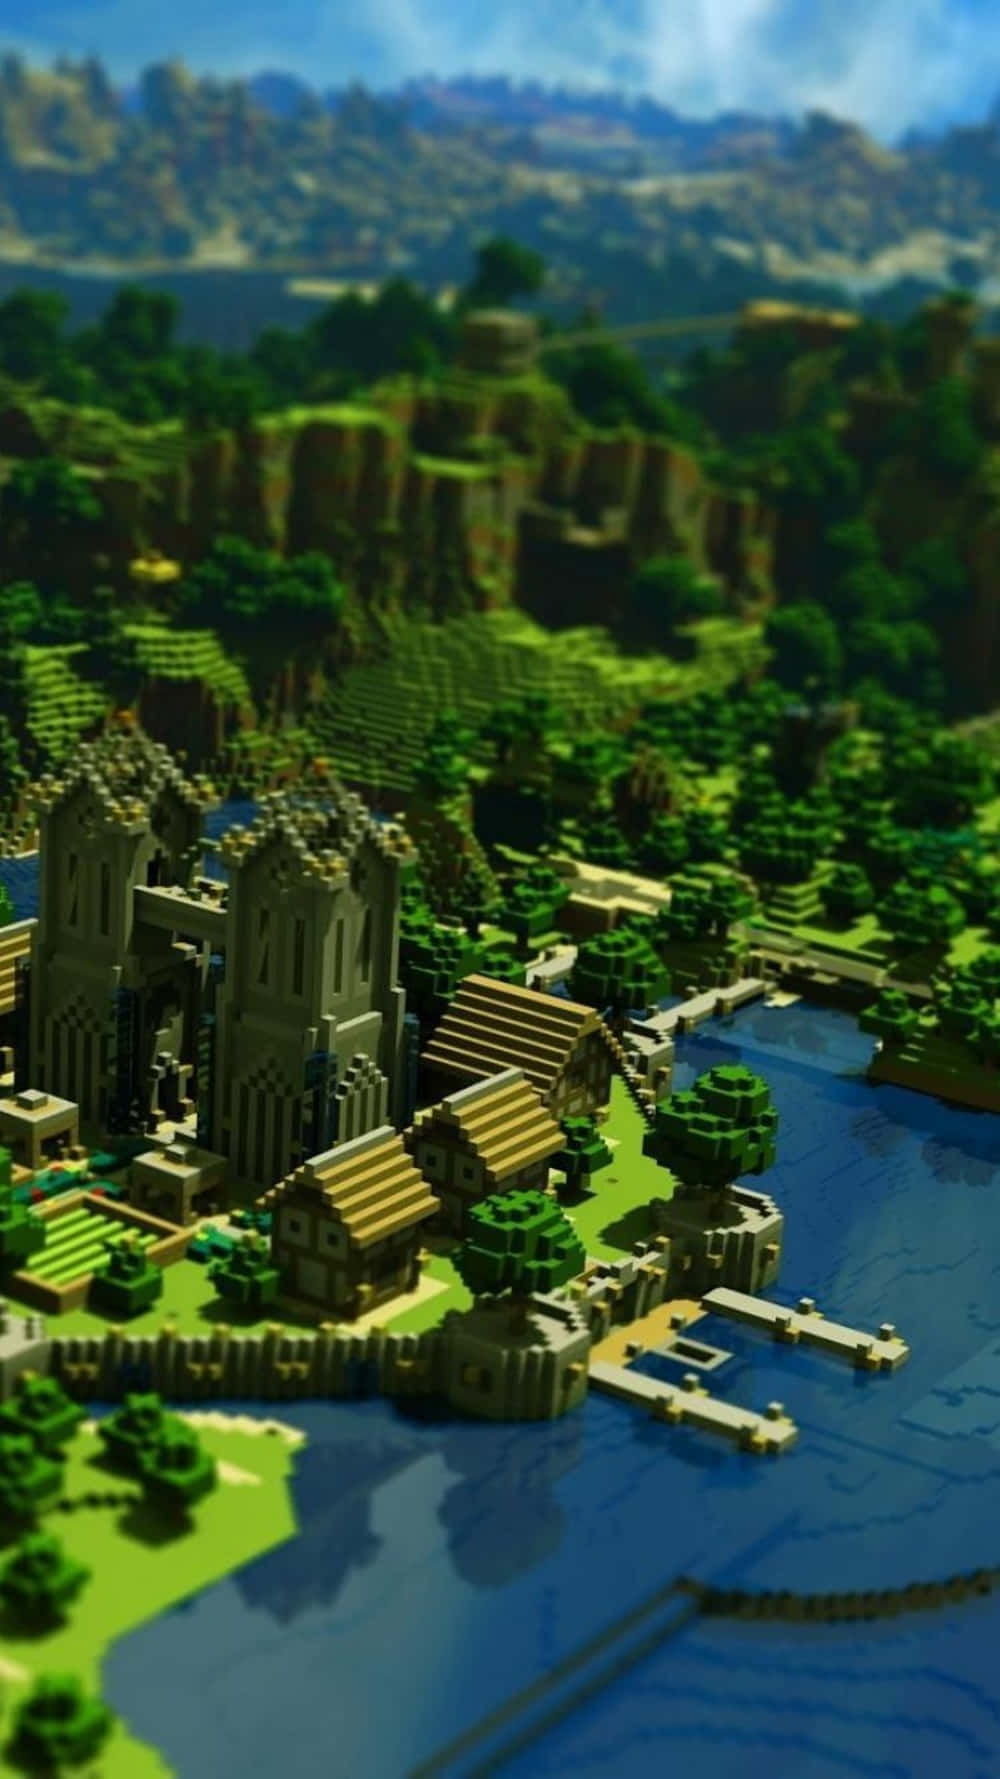 Pixel3xl Minecraft Hintergrund Grünes Gelände.